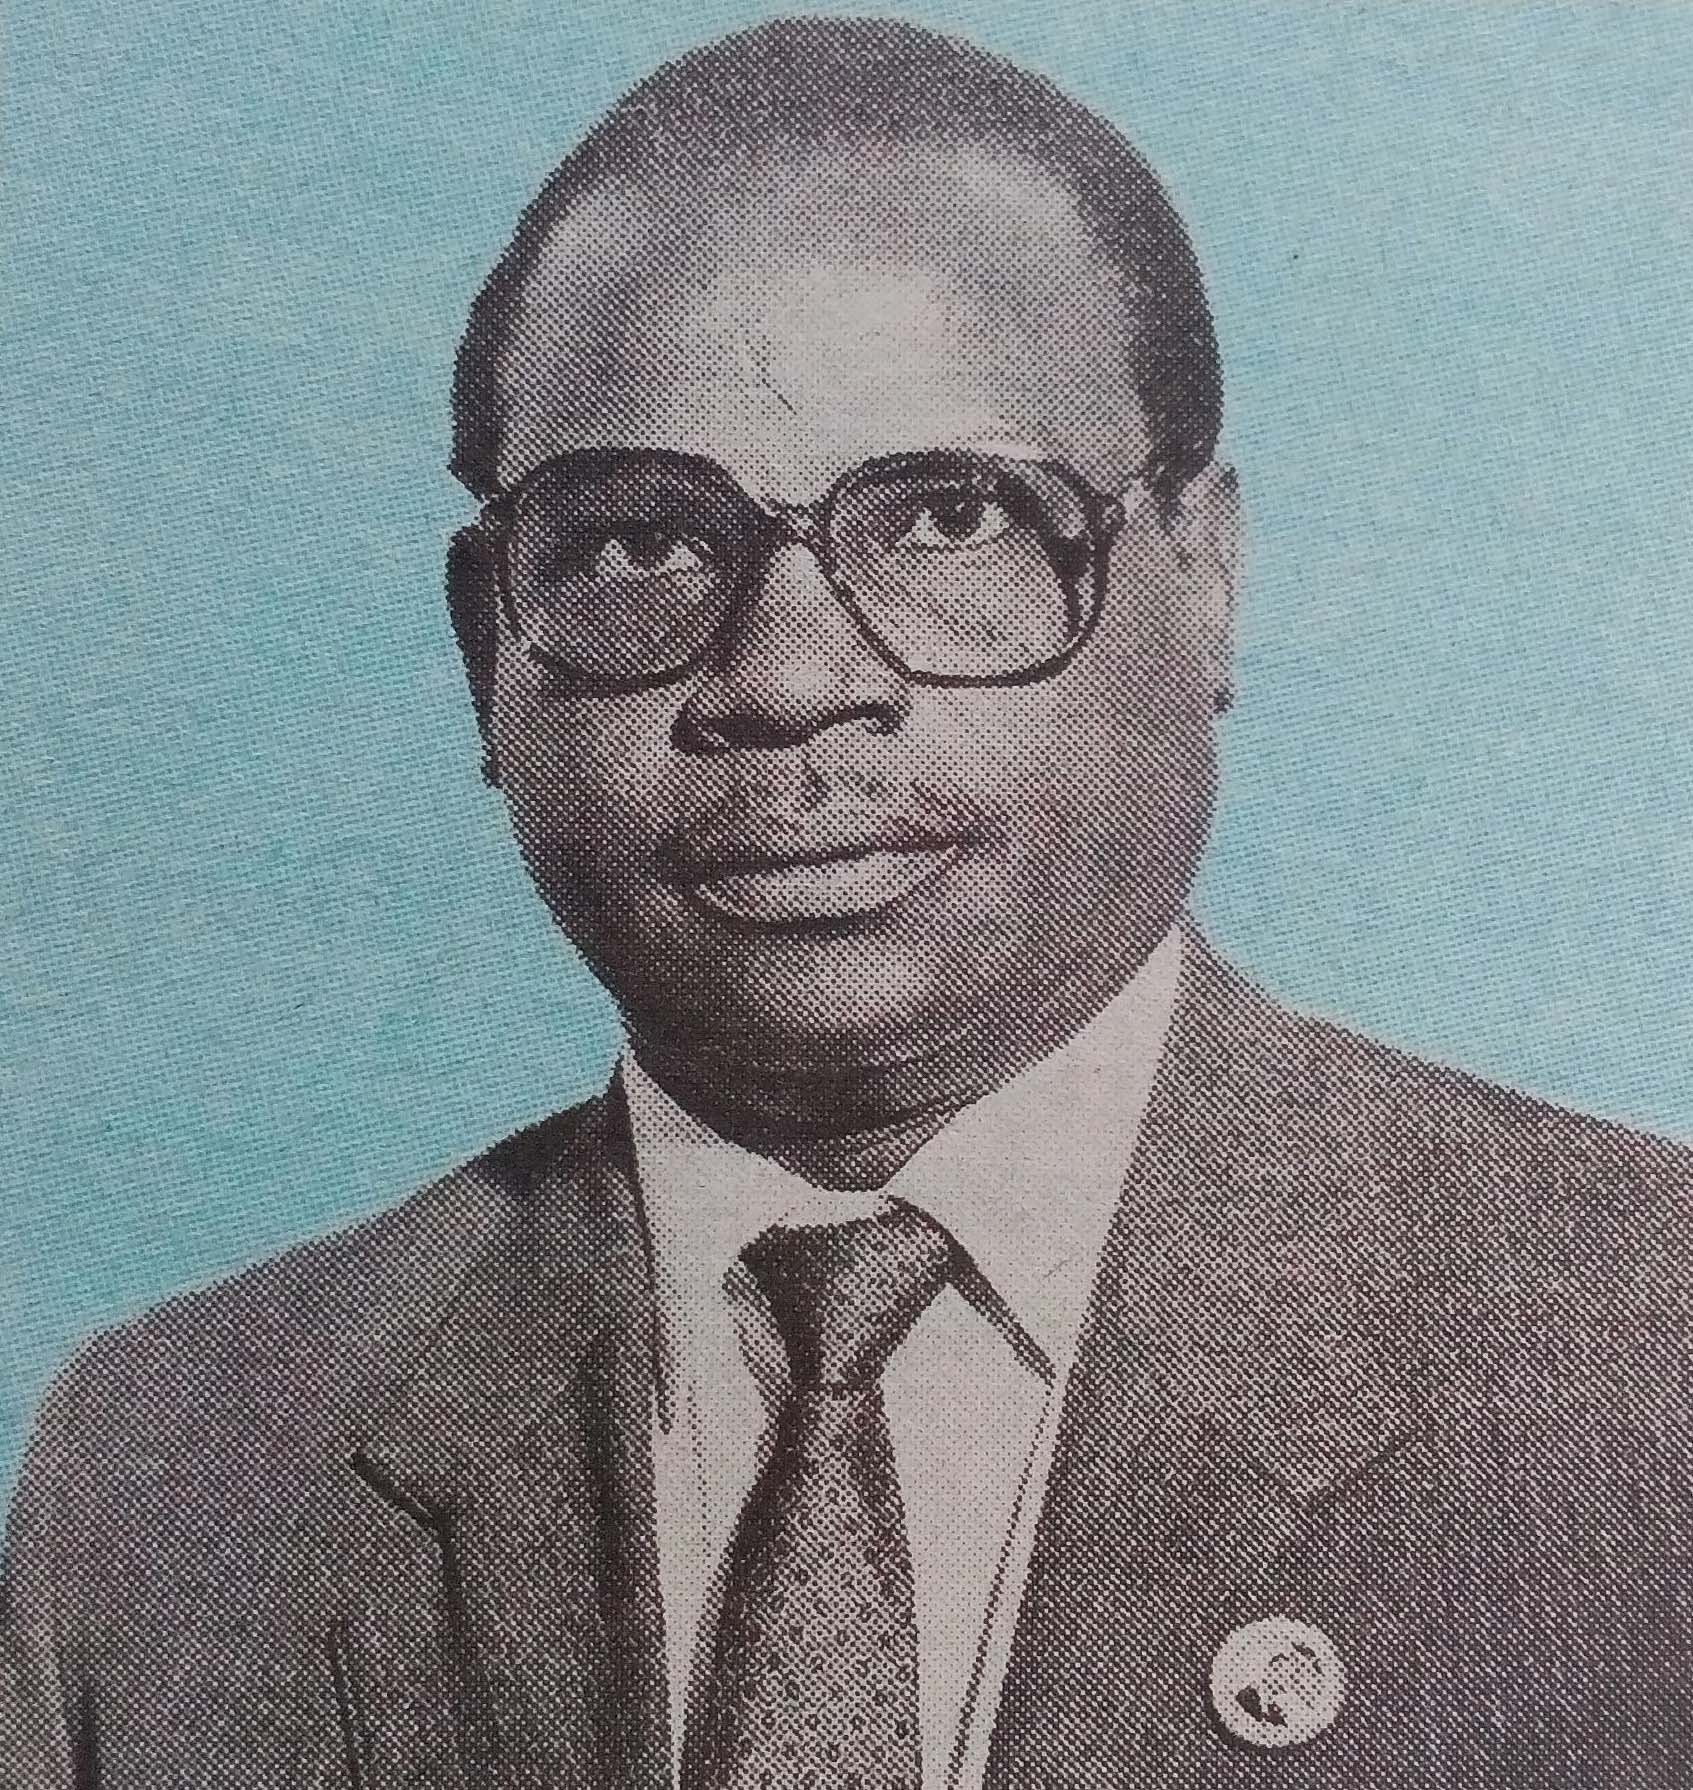 Obituary Image of Johnstone Mwandawiro Mwanjala